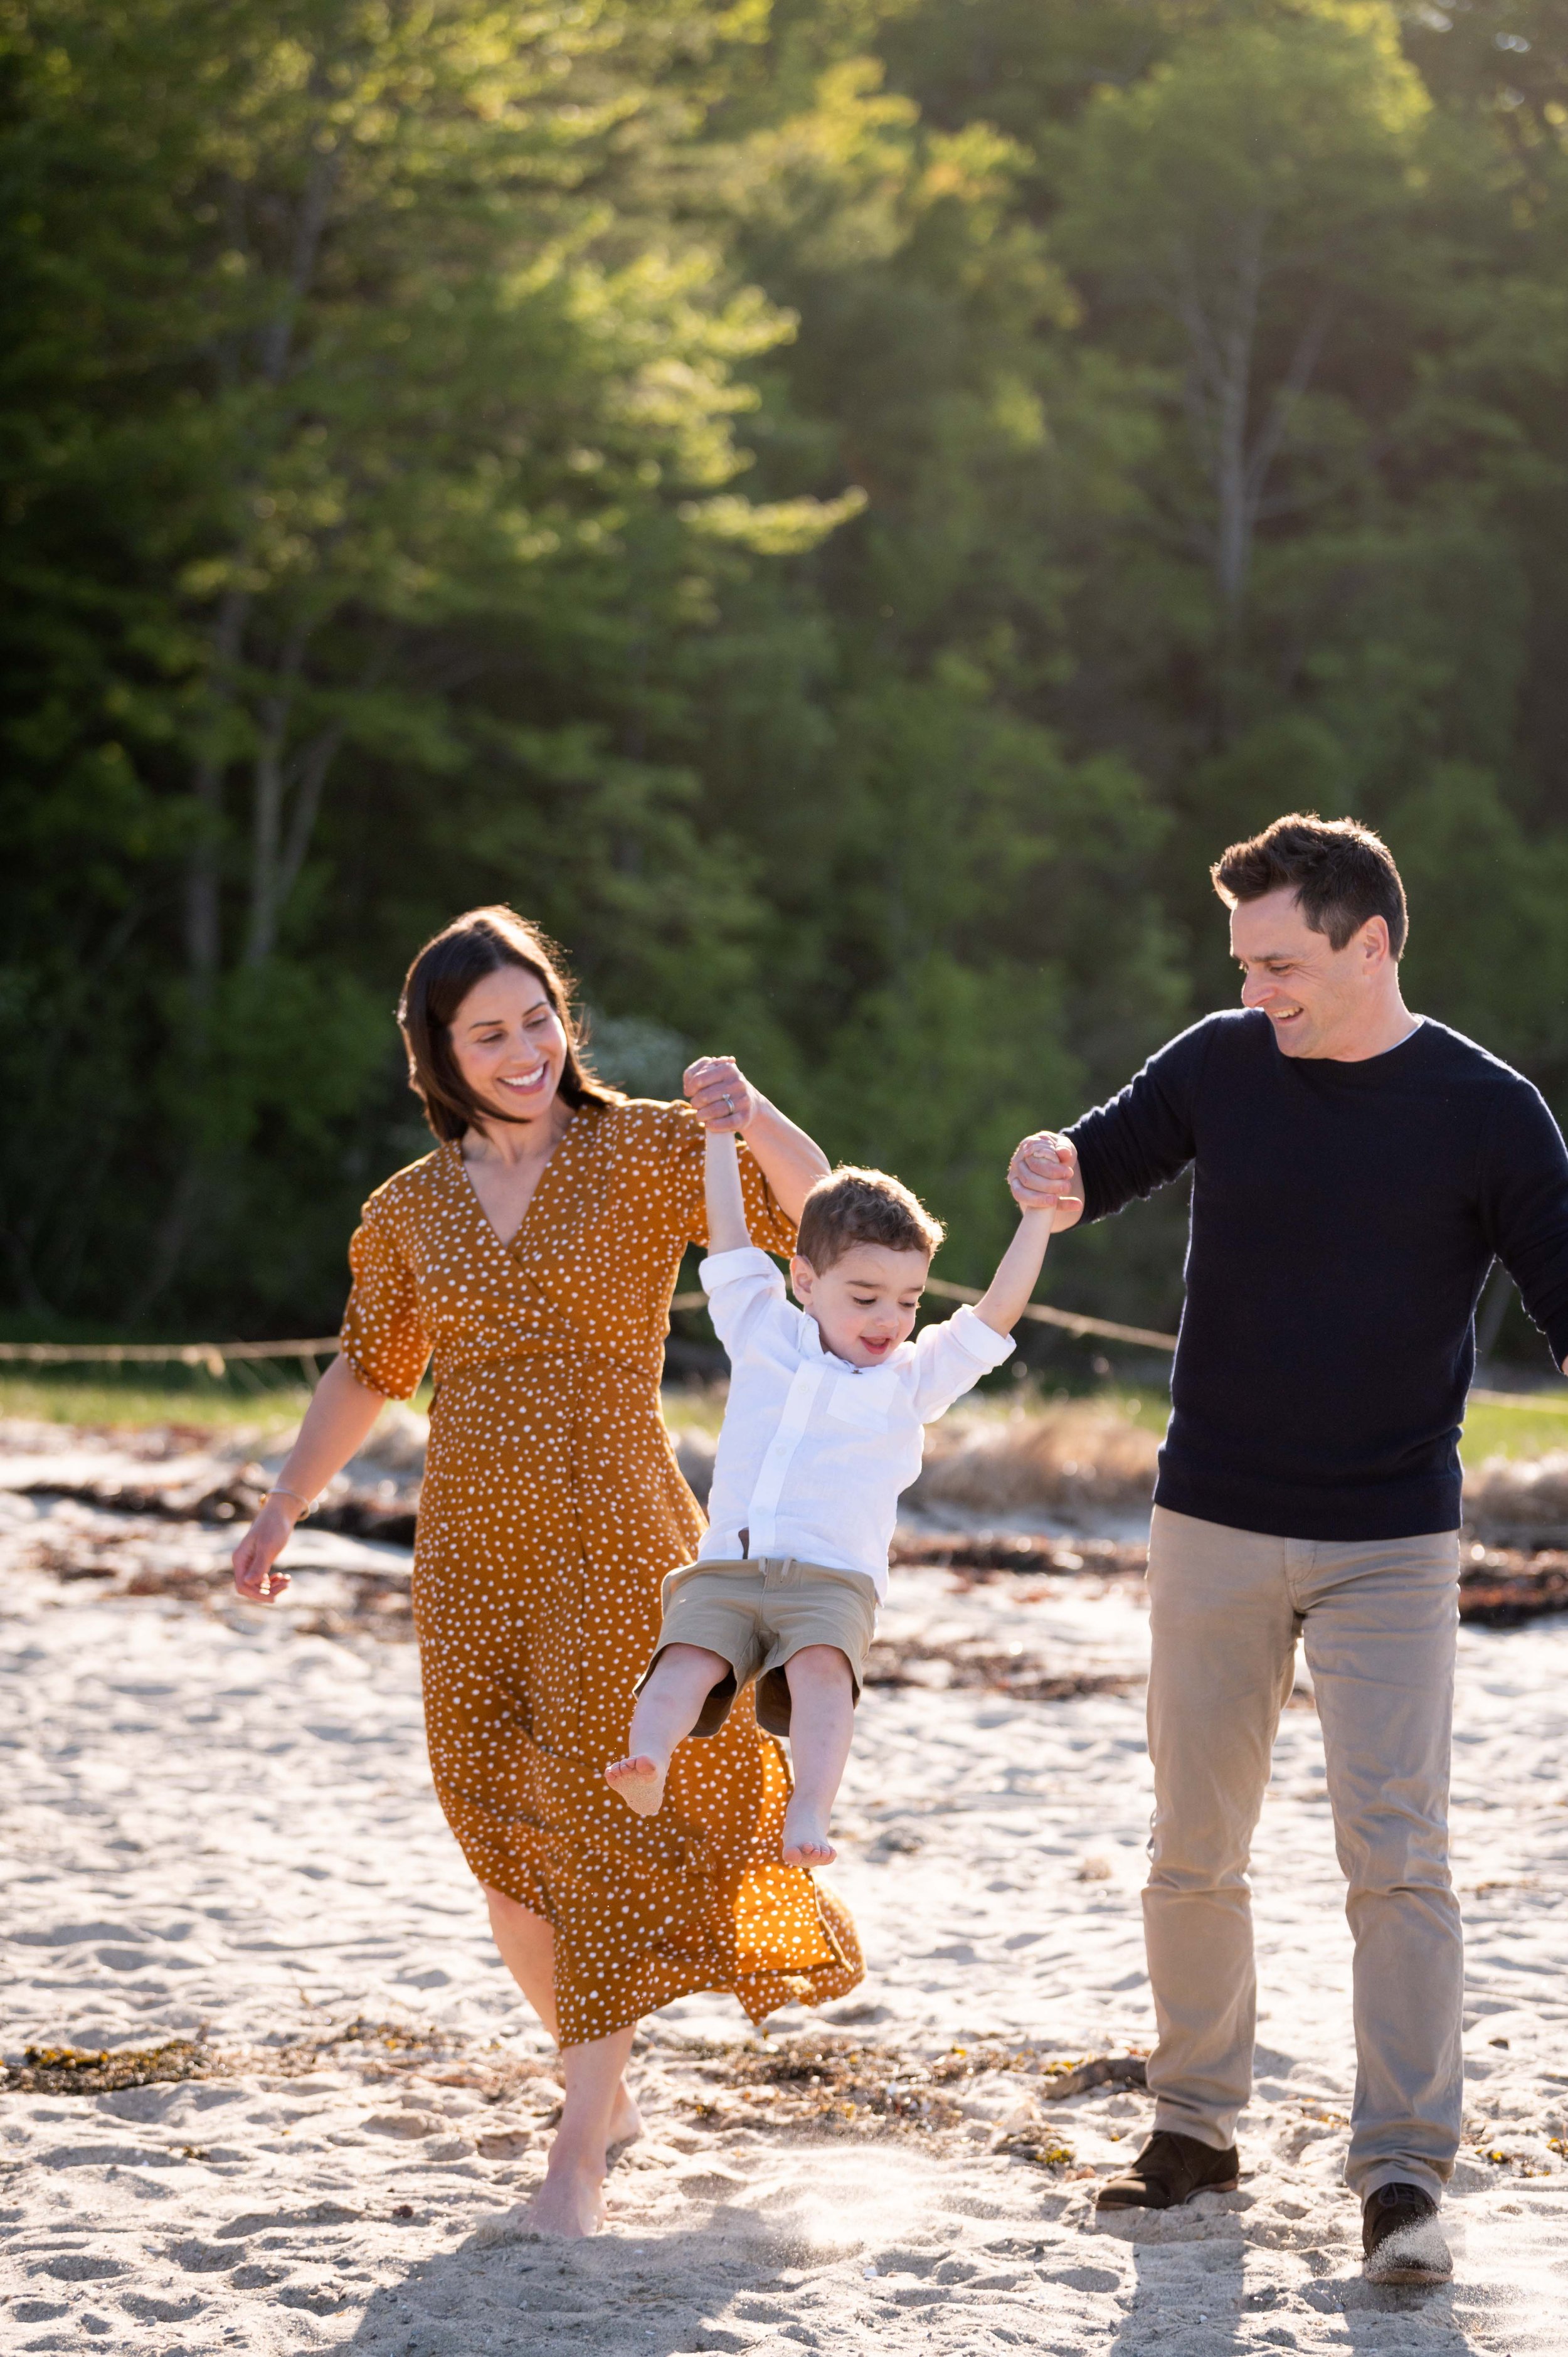 lindsay murphy photography | portland maine family photographer | maine family swinging and walking on beach.jpg